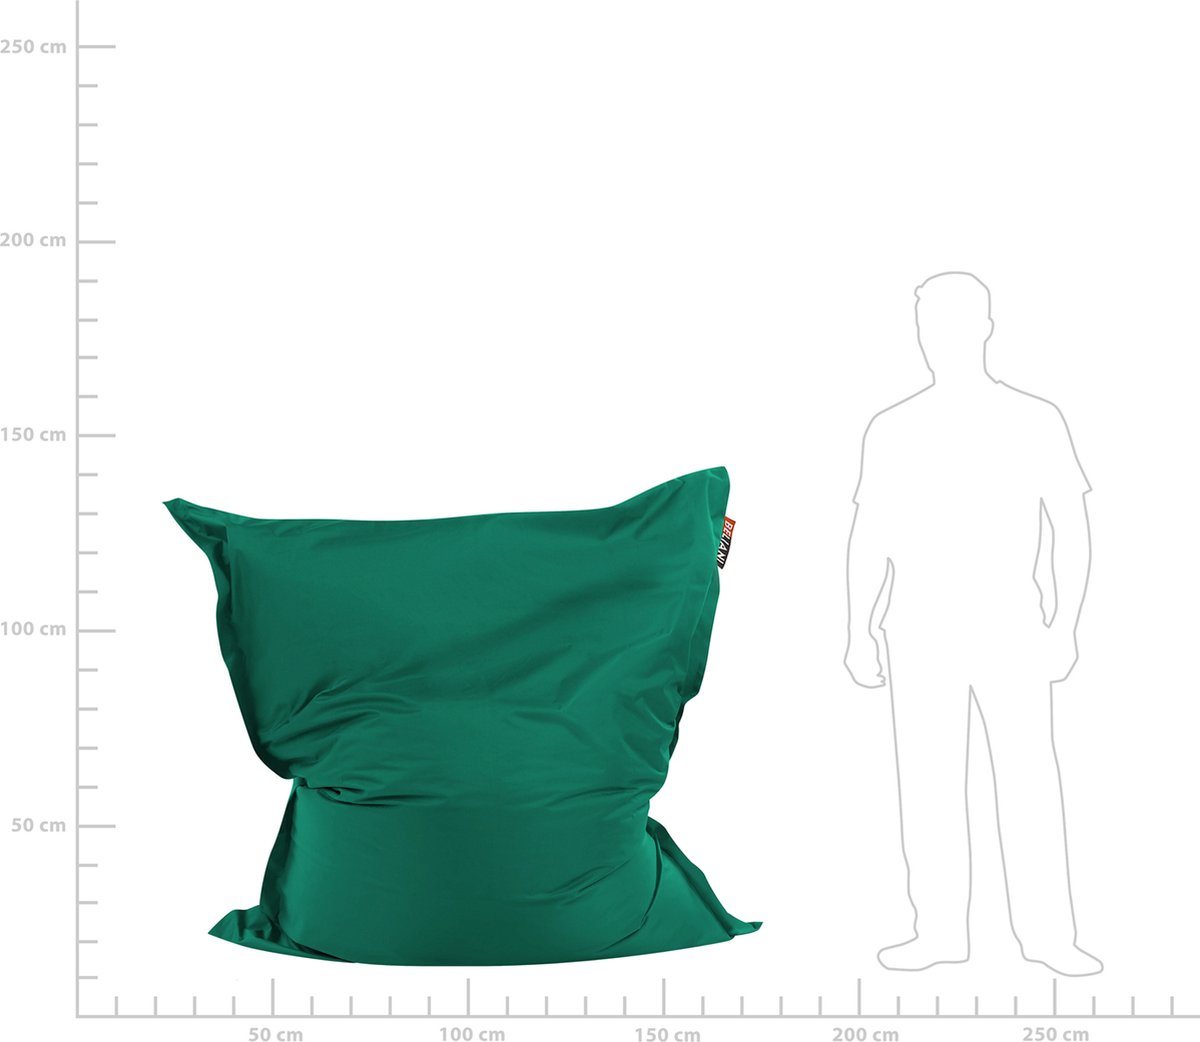 Beliani Bean Bag Big Zitzak Polyester 140 X 180 Cm - Groen